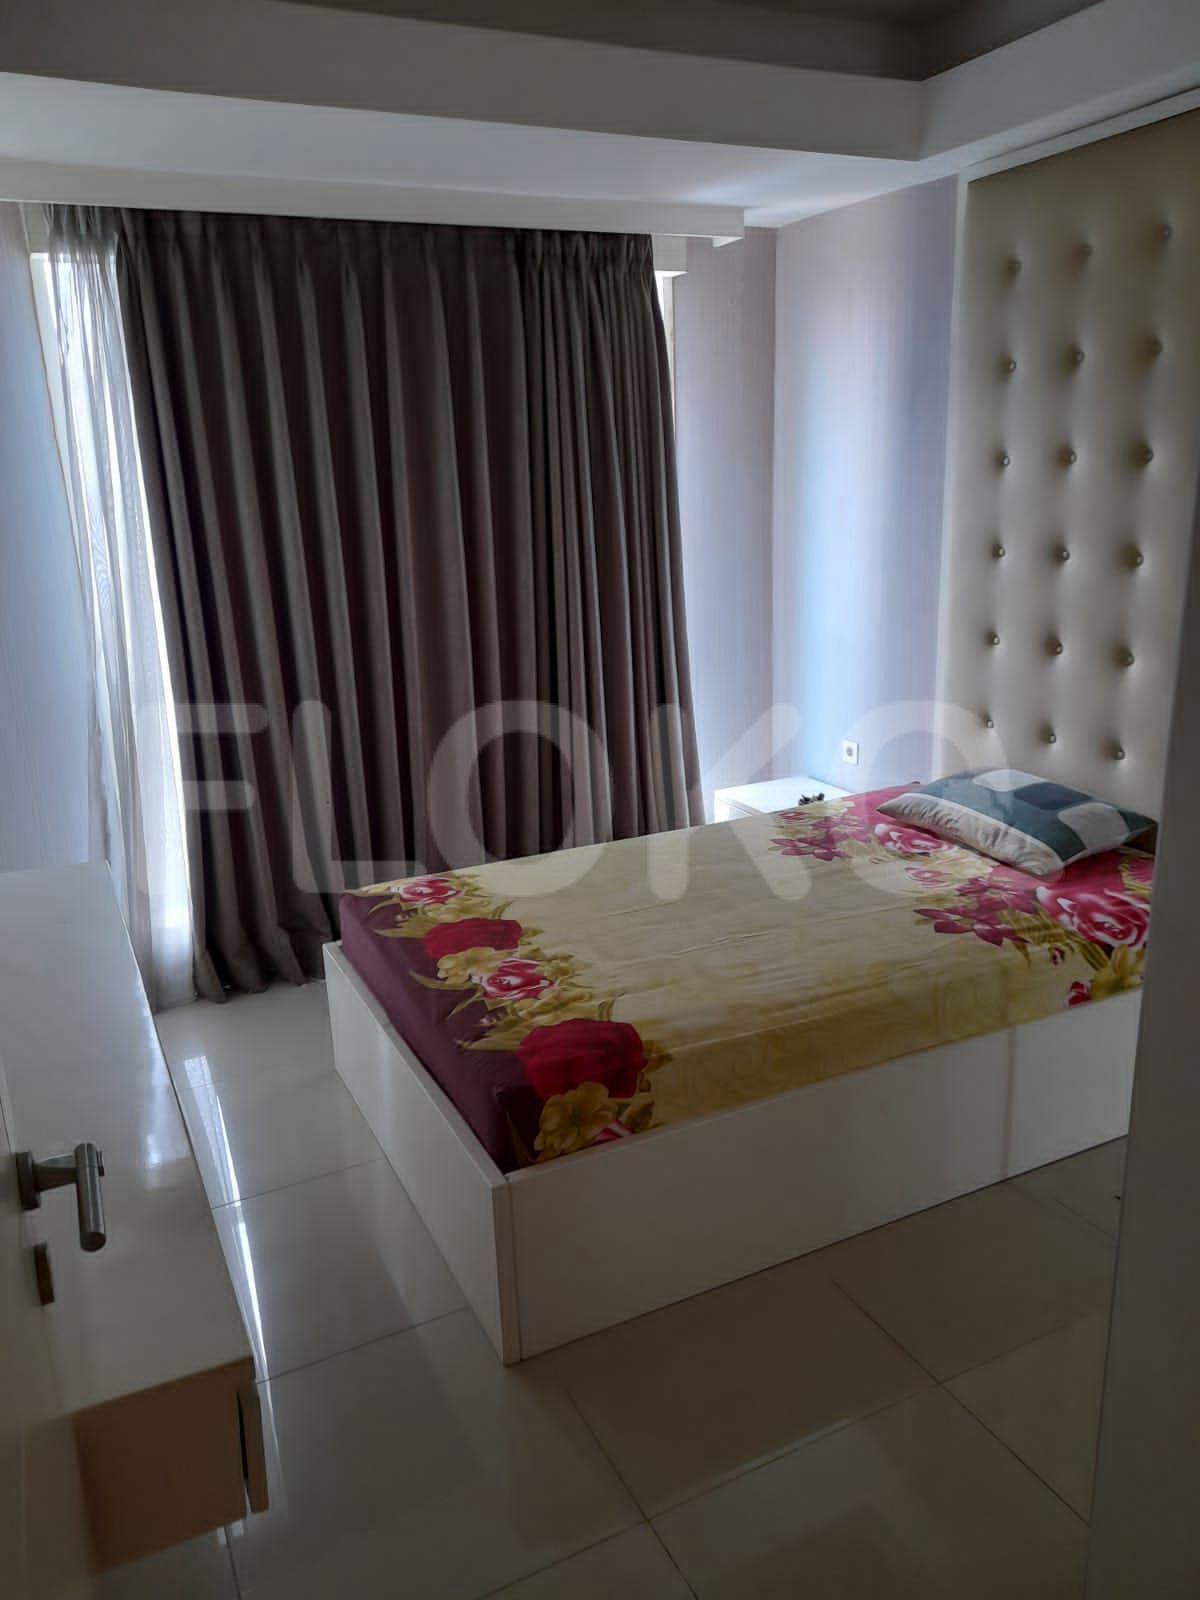 4 Bedroom on 10th Floor ftef92 for Rent in Casa Grande